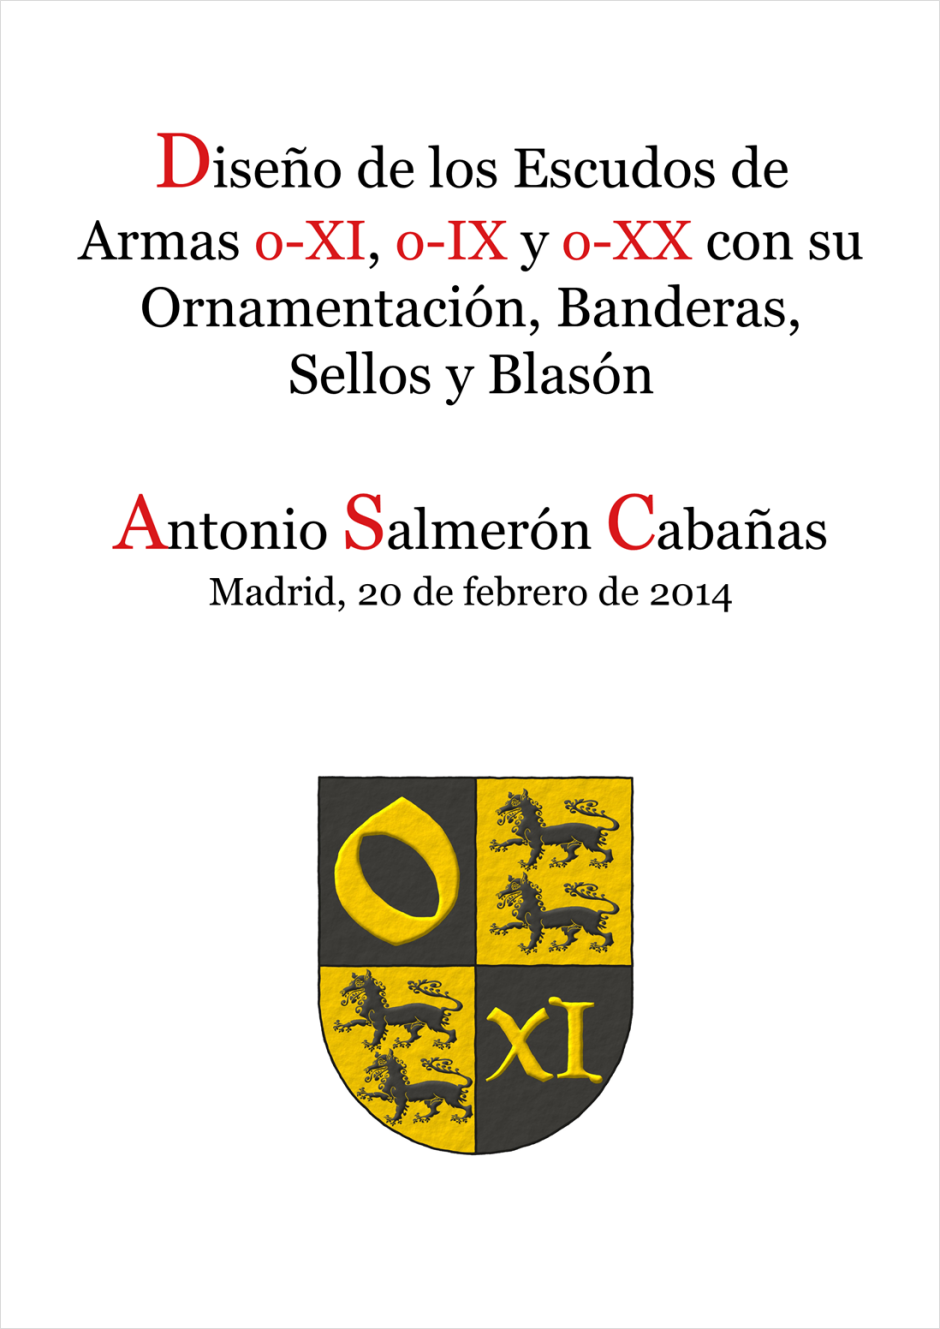 Diseño de los escudos de armas o-XI, o-IX, o-XX con su ornamentación, banderas, sellos y blasón